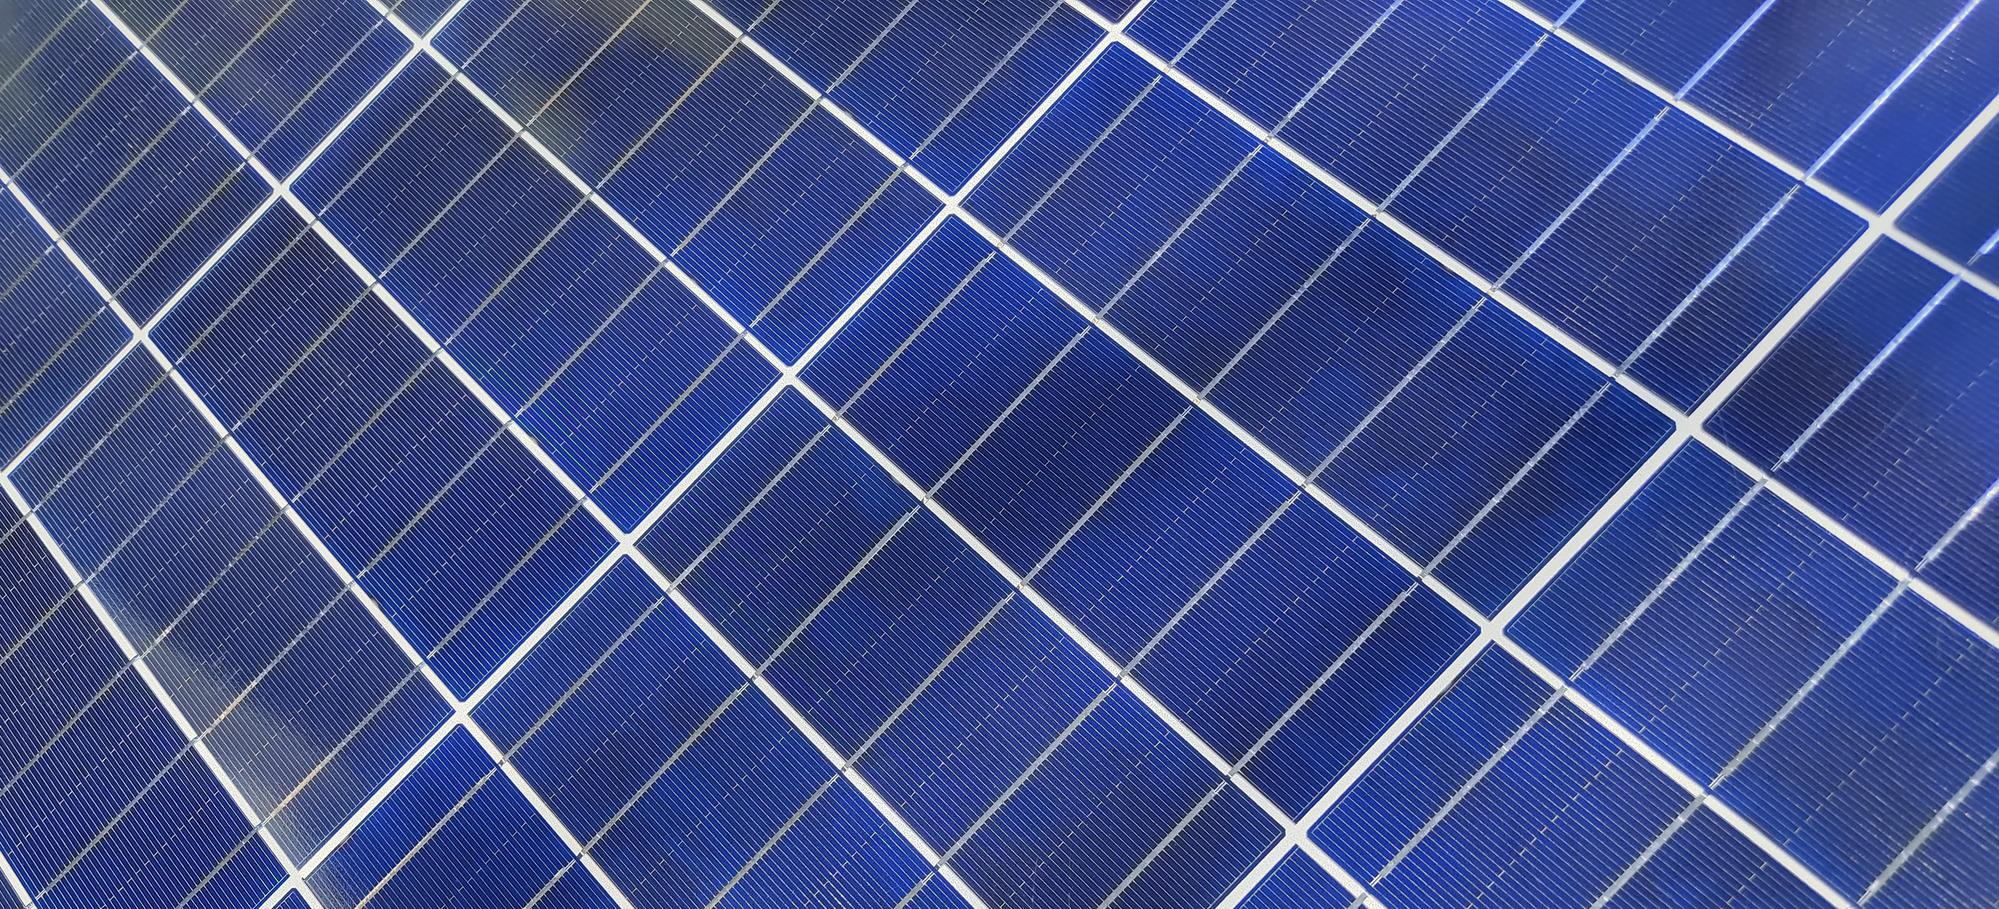 Celda solar o celda fotovoltaica